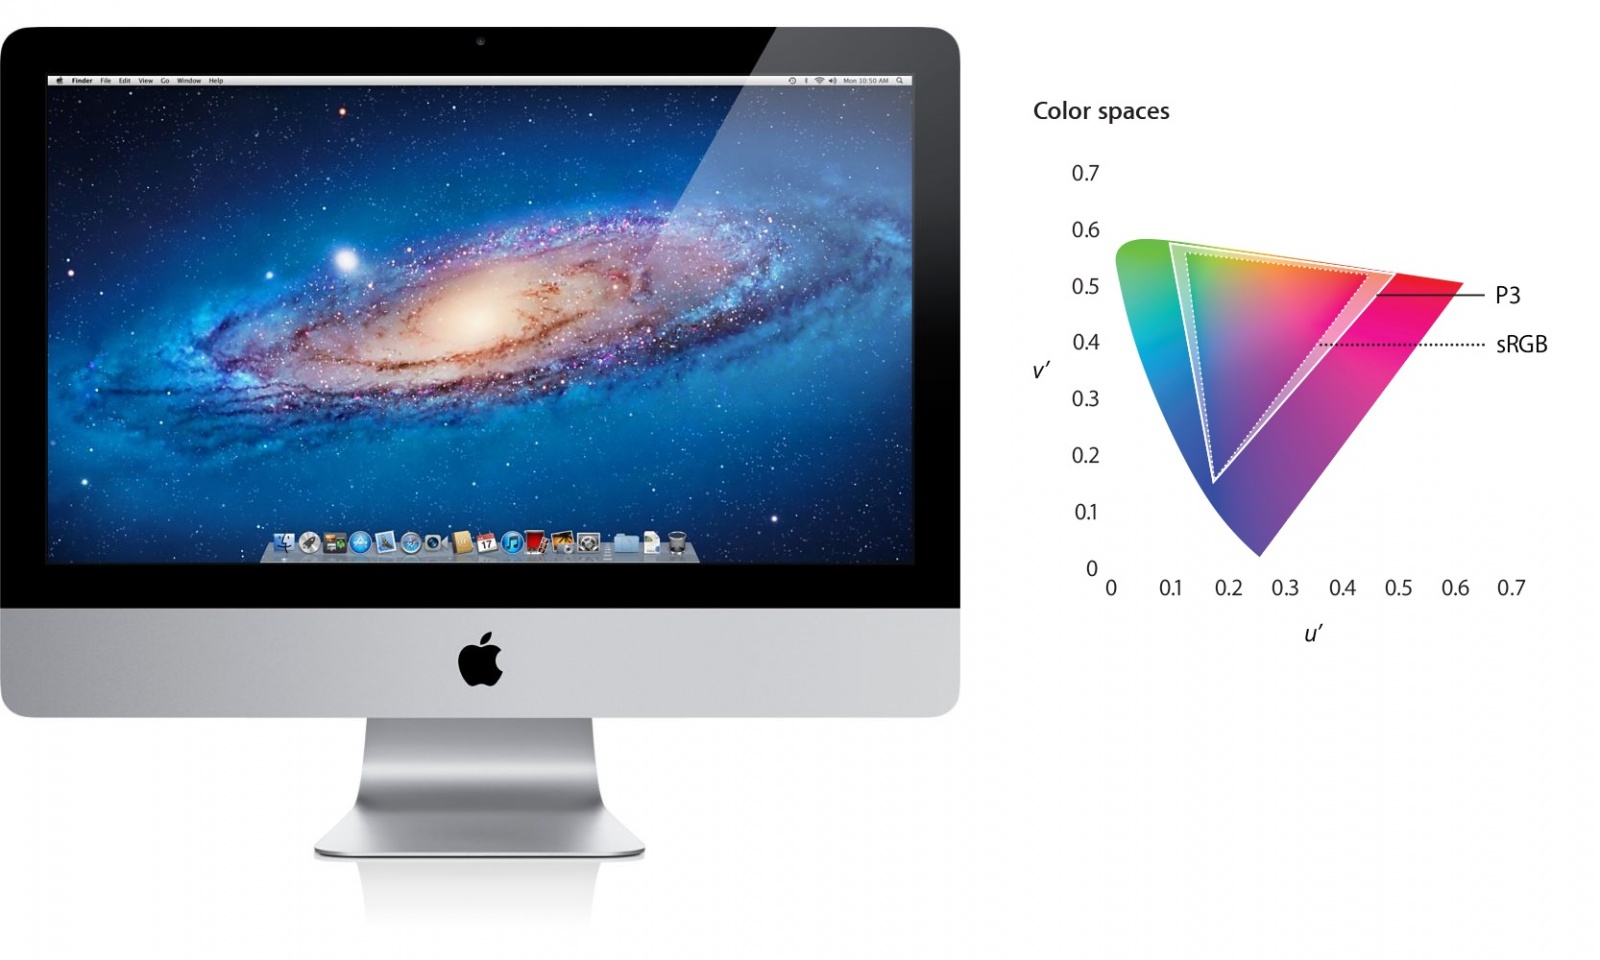 моноблок Apple iMac 21.5